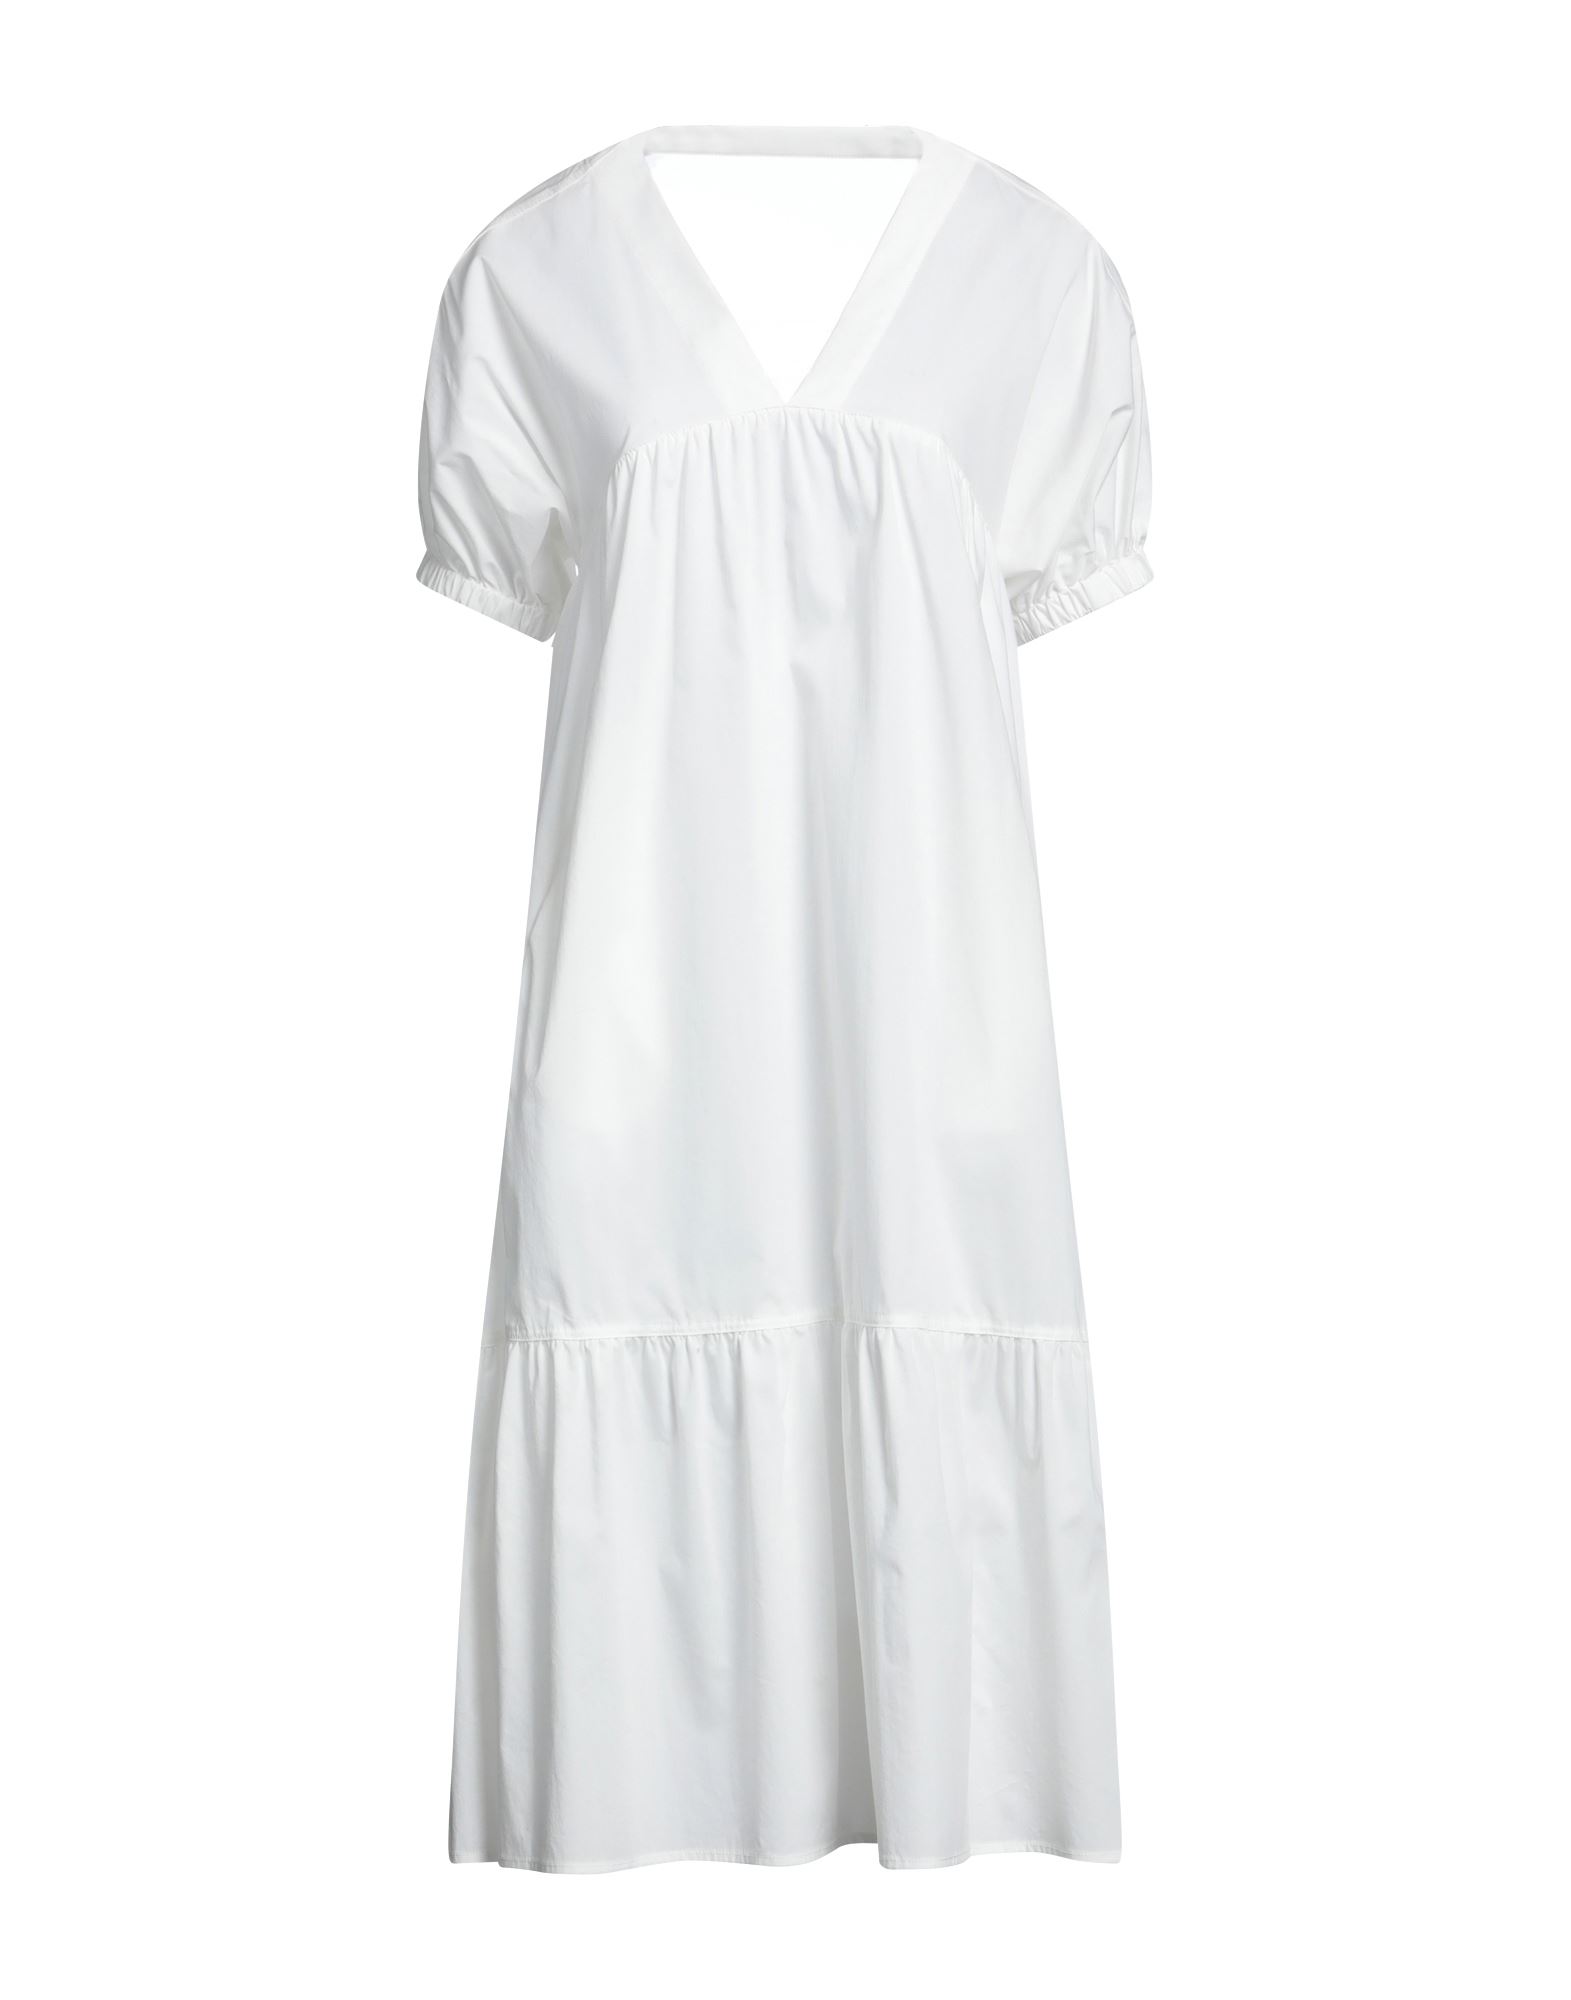 Emma & Gaia Woman Midi Dress White Size 6 Cotton, Polyamide, Elastane